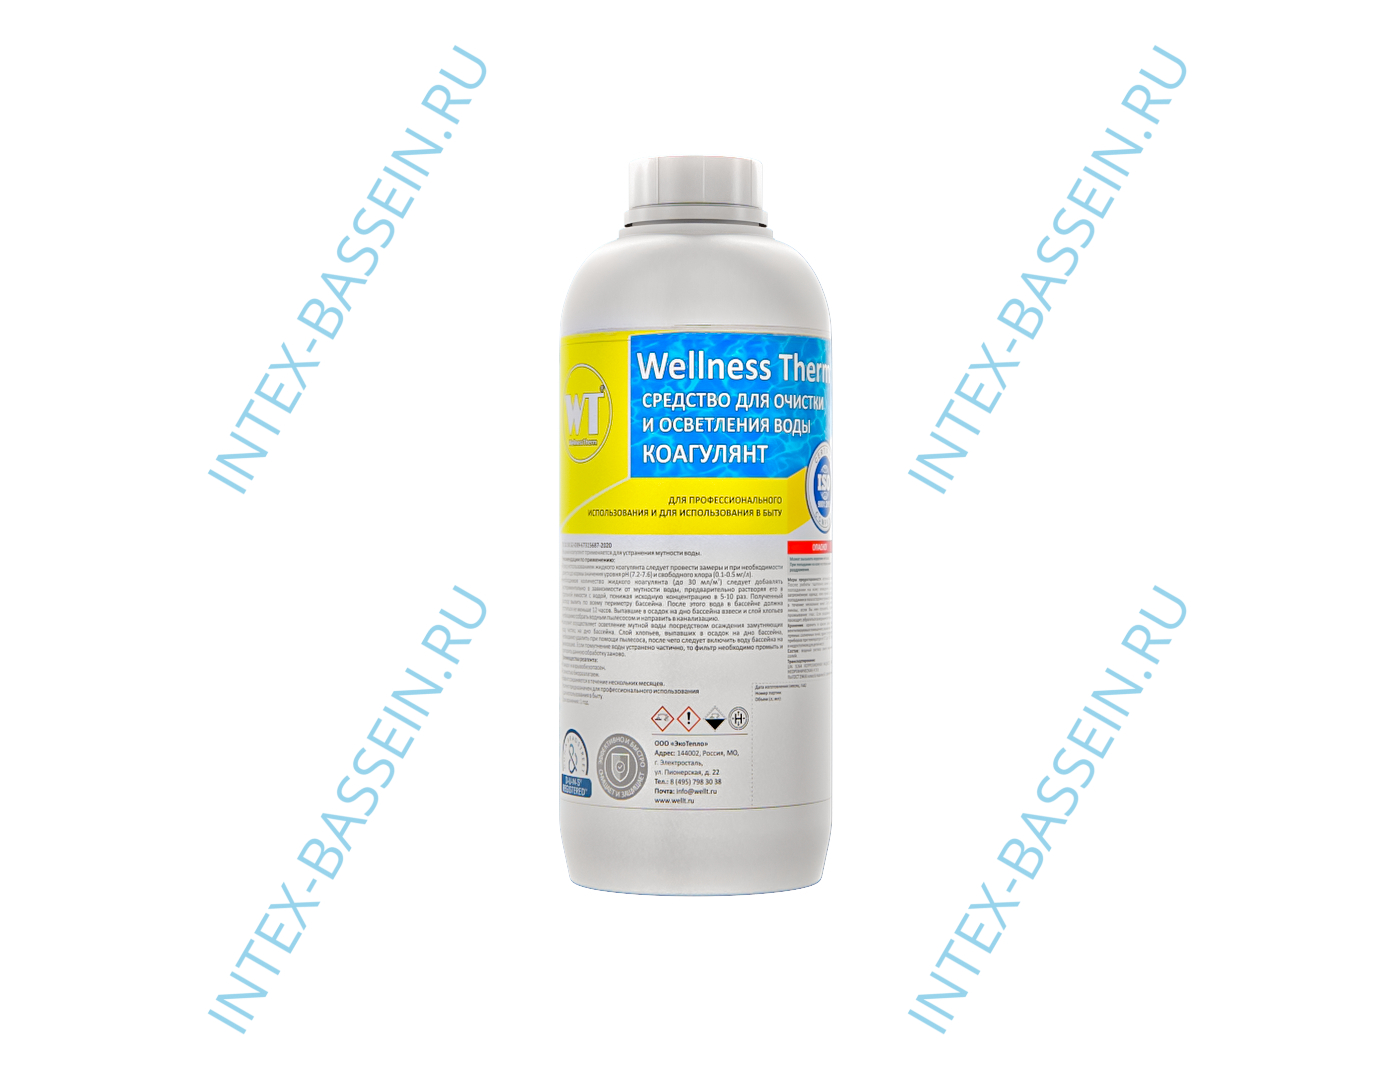 Коагулянт Wellness Therm (средство для очистки и осветления воды) 1 л, арт. 312583